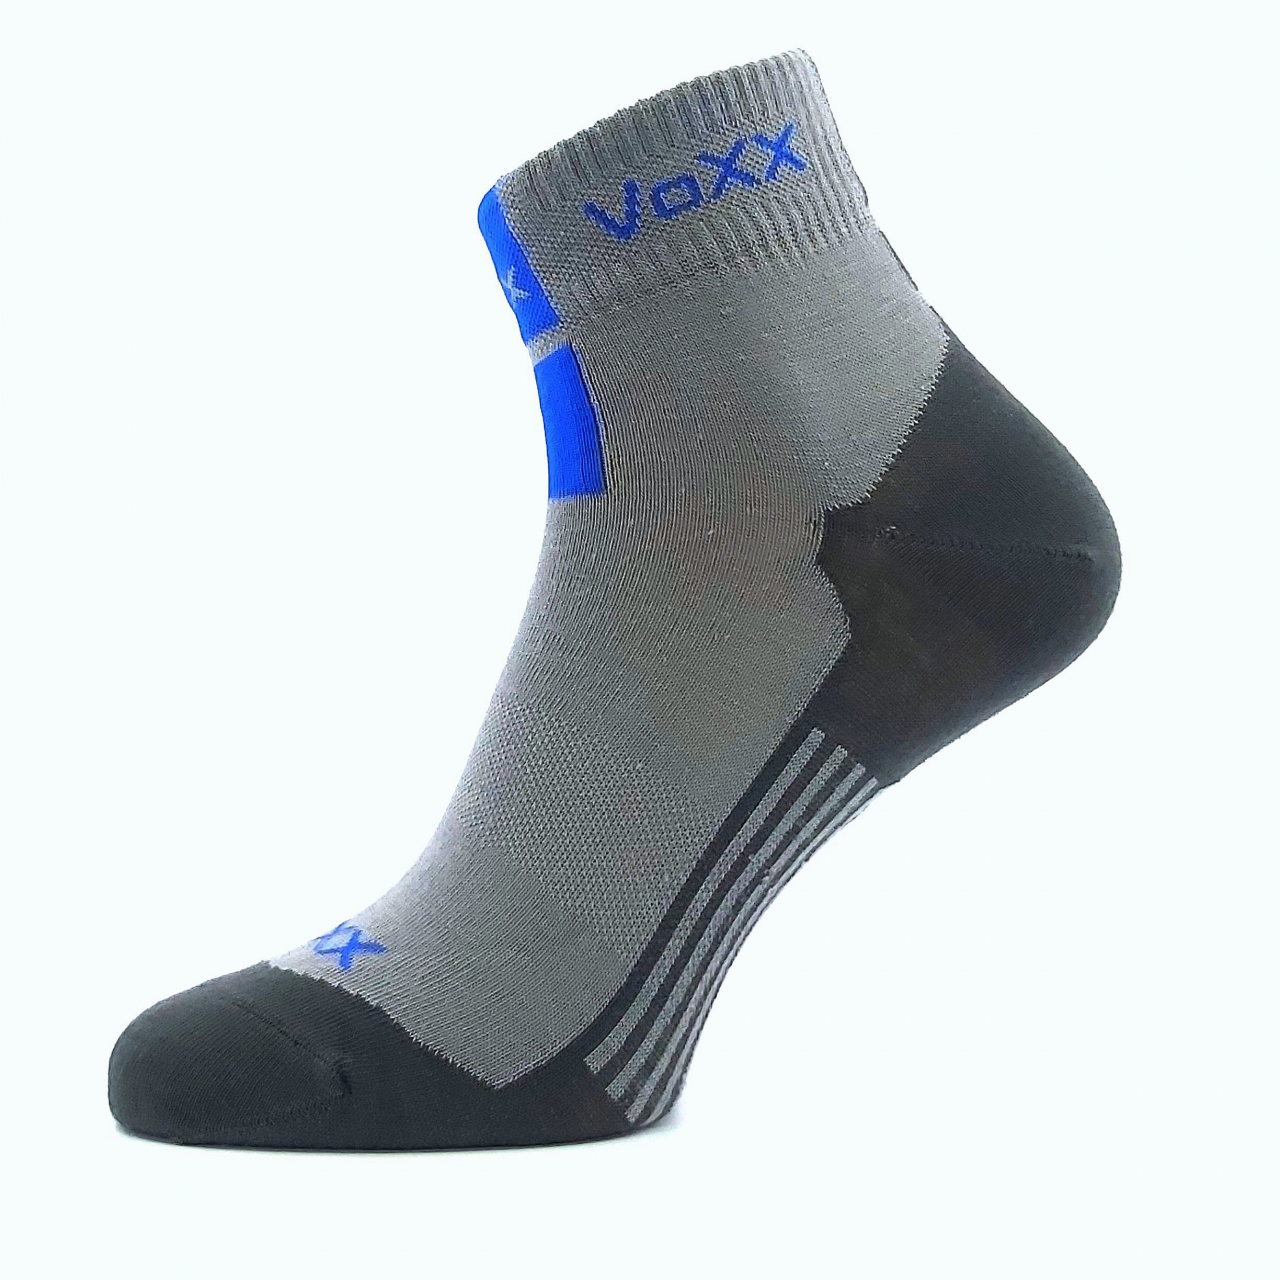 Ponožky unisex klasické Voxx Mostan silproX - světle šedé, 35-38